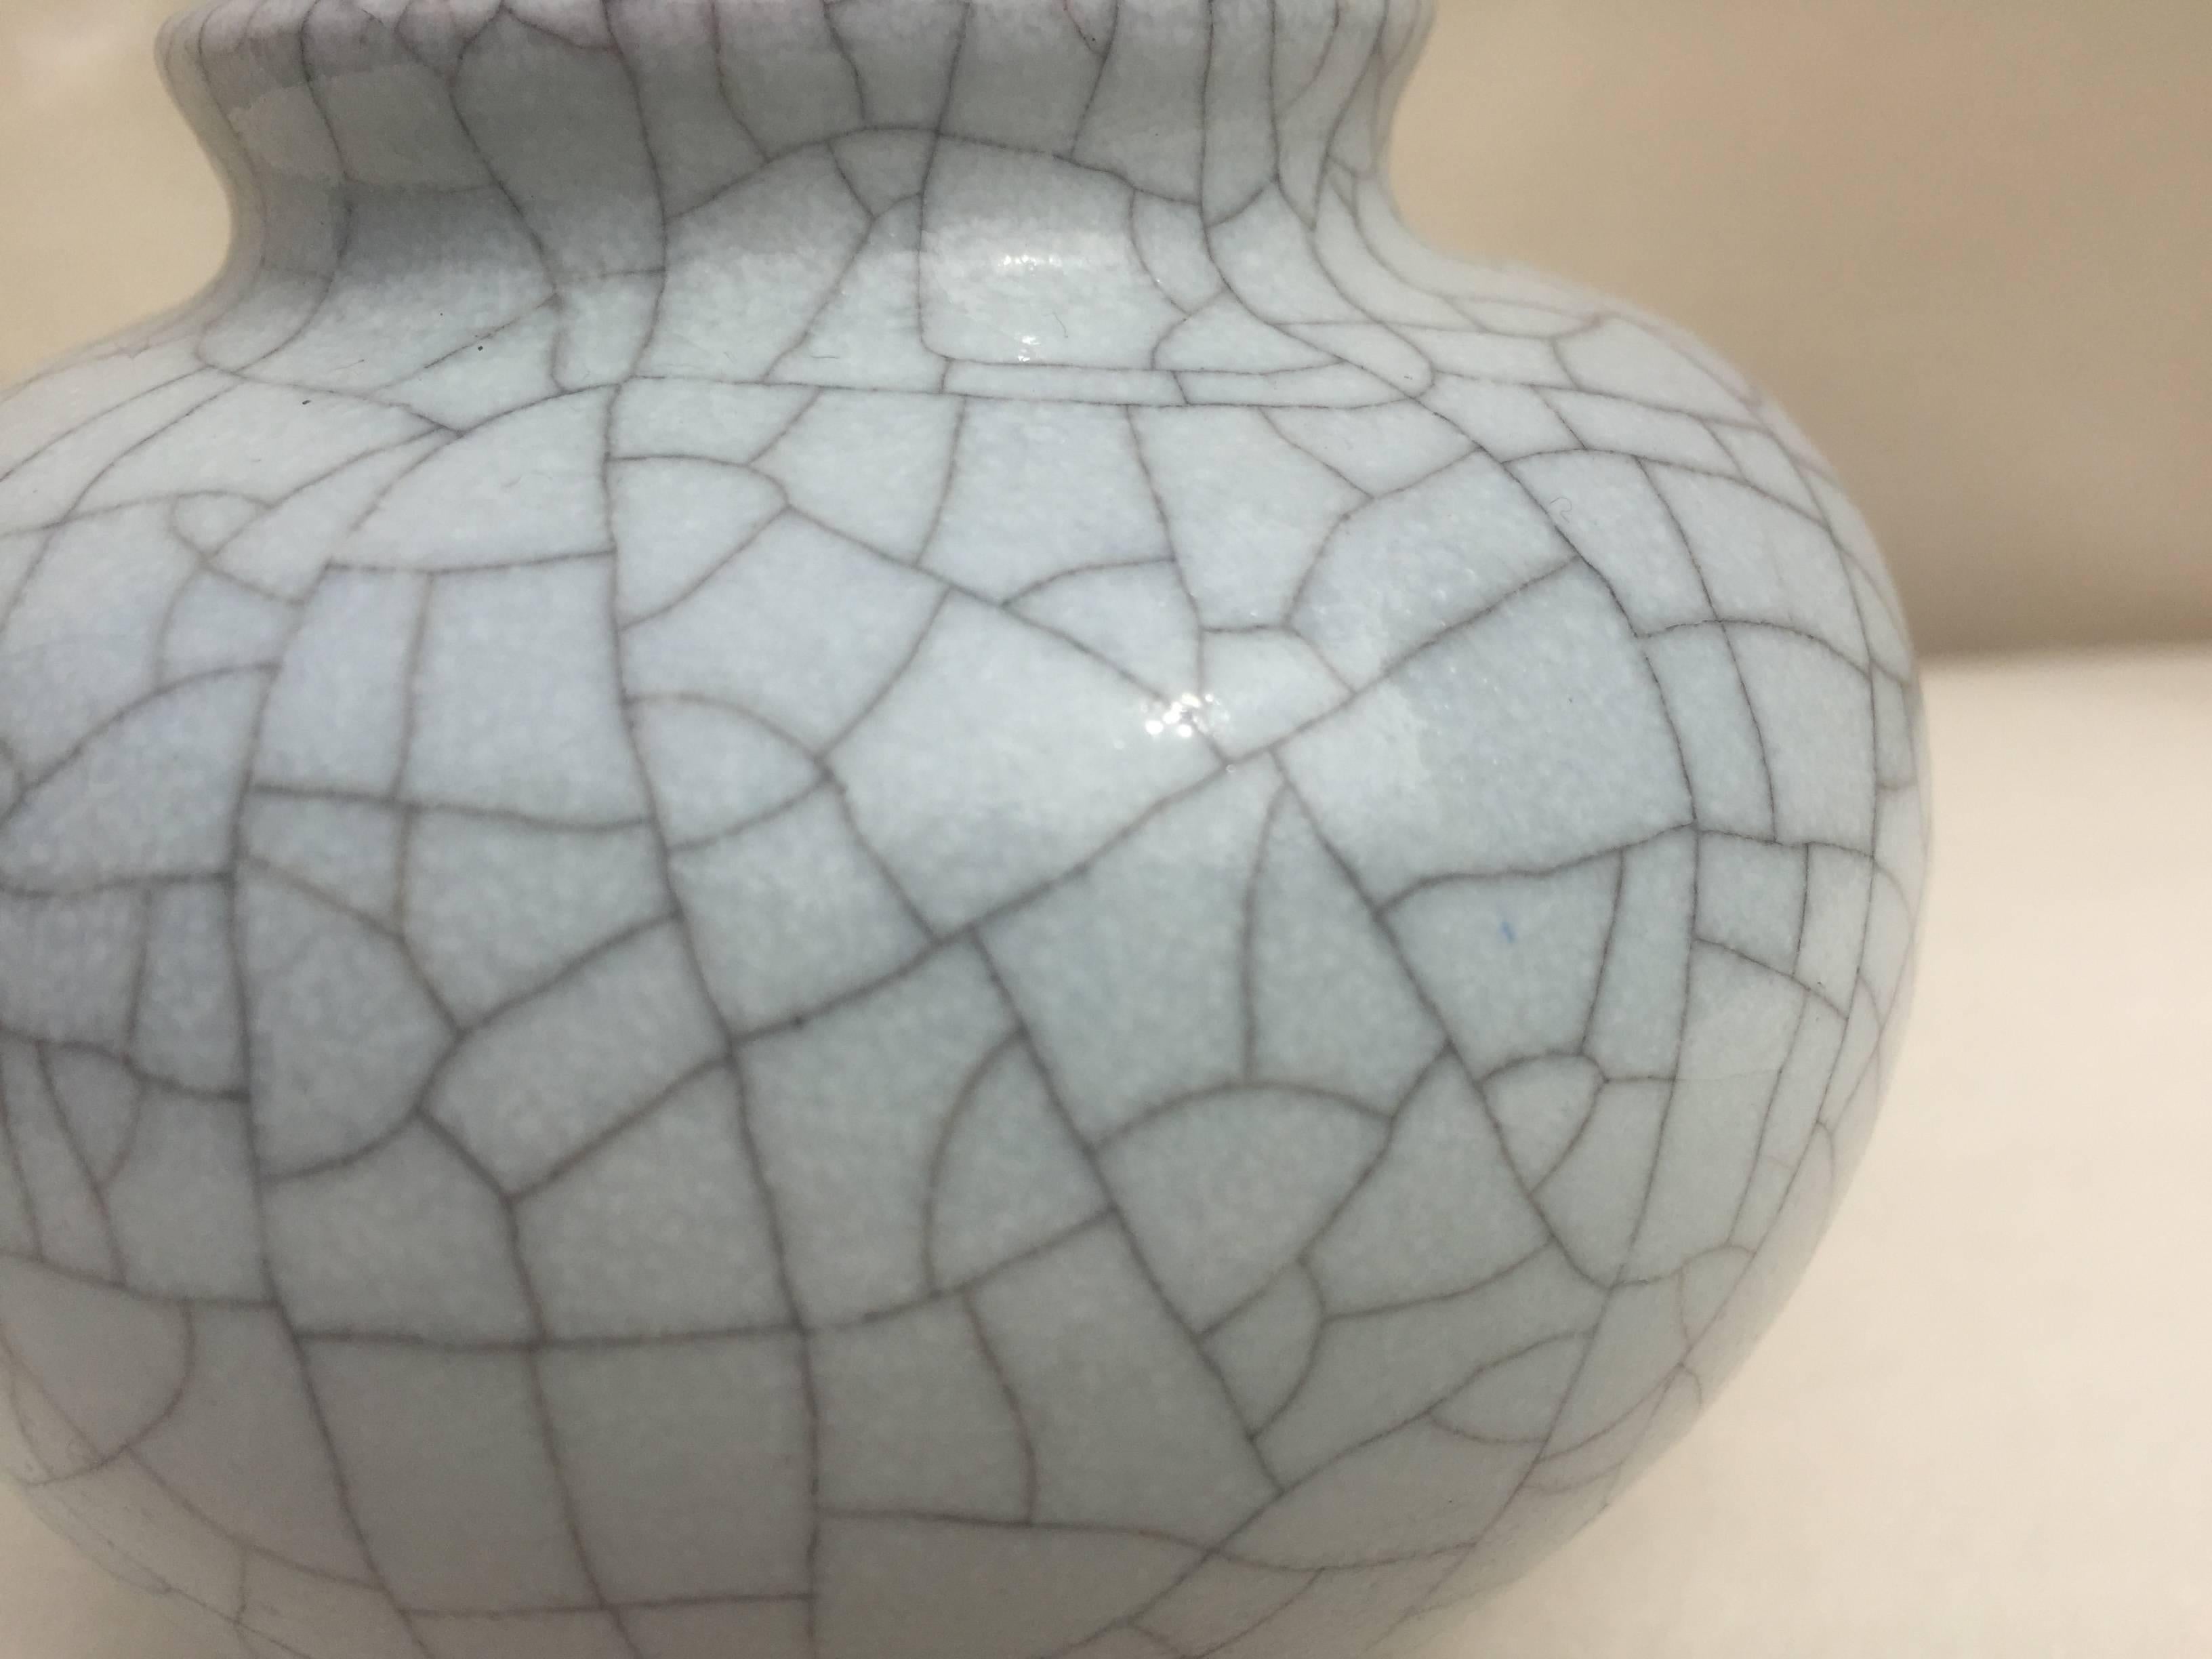 German Spherical Vase by Karlsruhe Majolica Glatzle 1970s in Grey Crackled Glaze For Sale